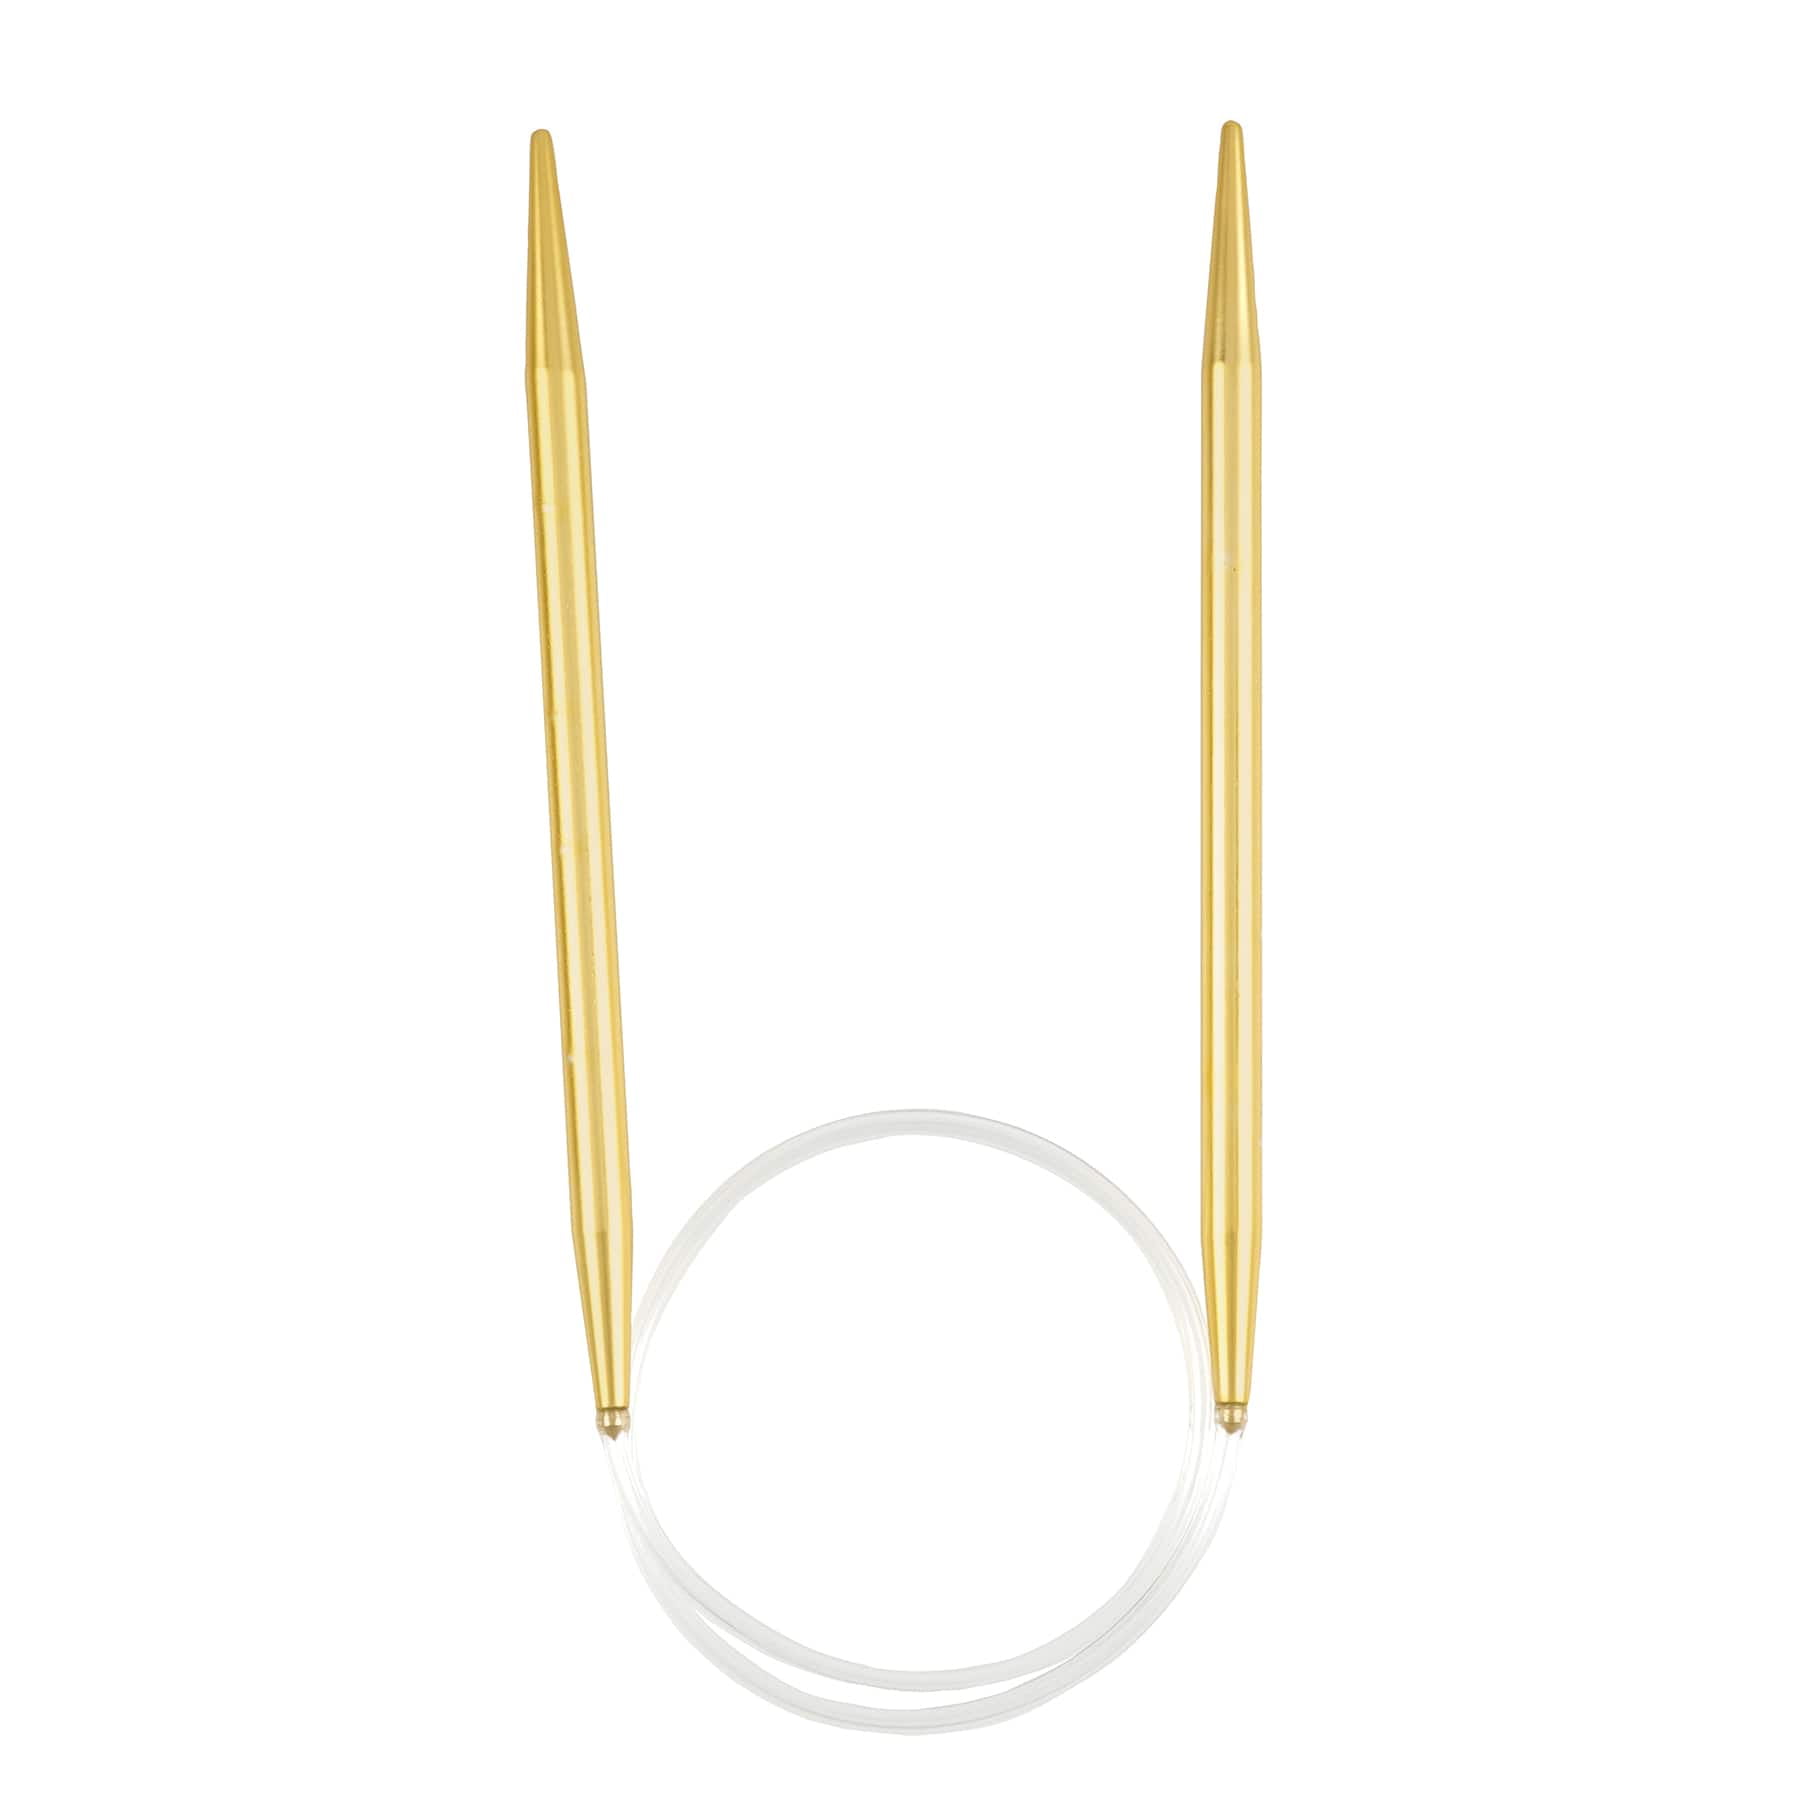 Best Pirce ⌛ Steel Yarn Needles by Loops & Threads™ 🛒